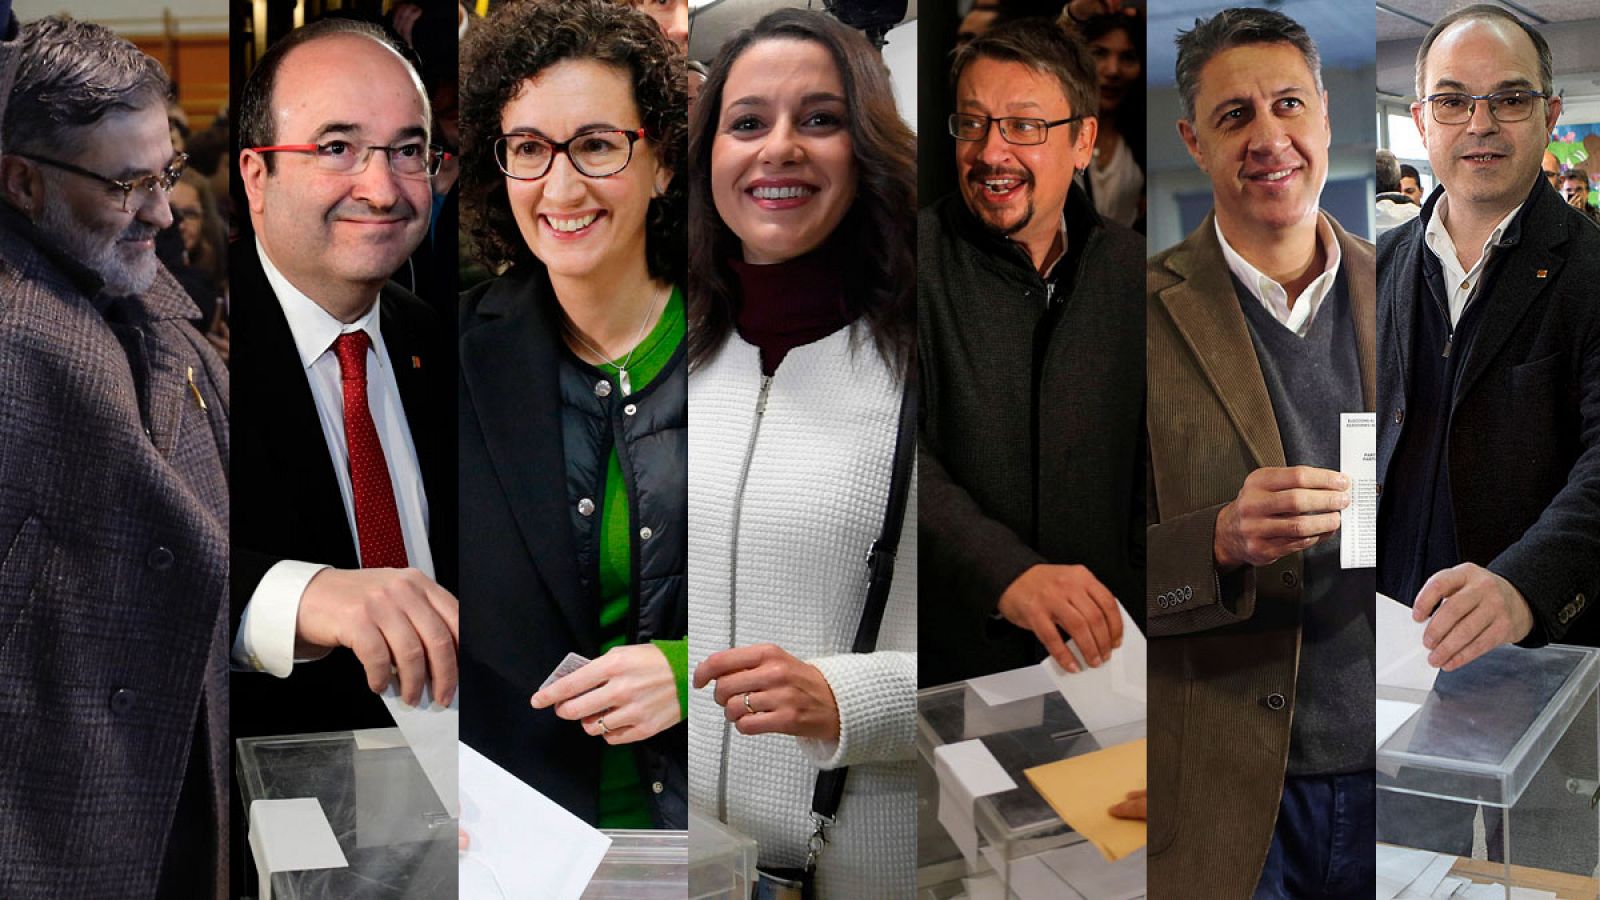 Elecciones catalanas - Los candidatos y principales líderes políticos votan en las elecciones catalanas - RTVE.es